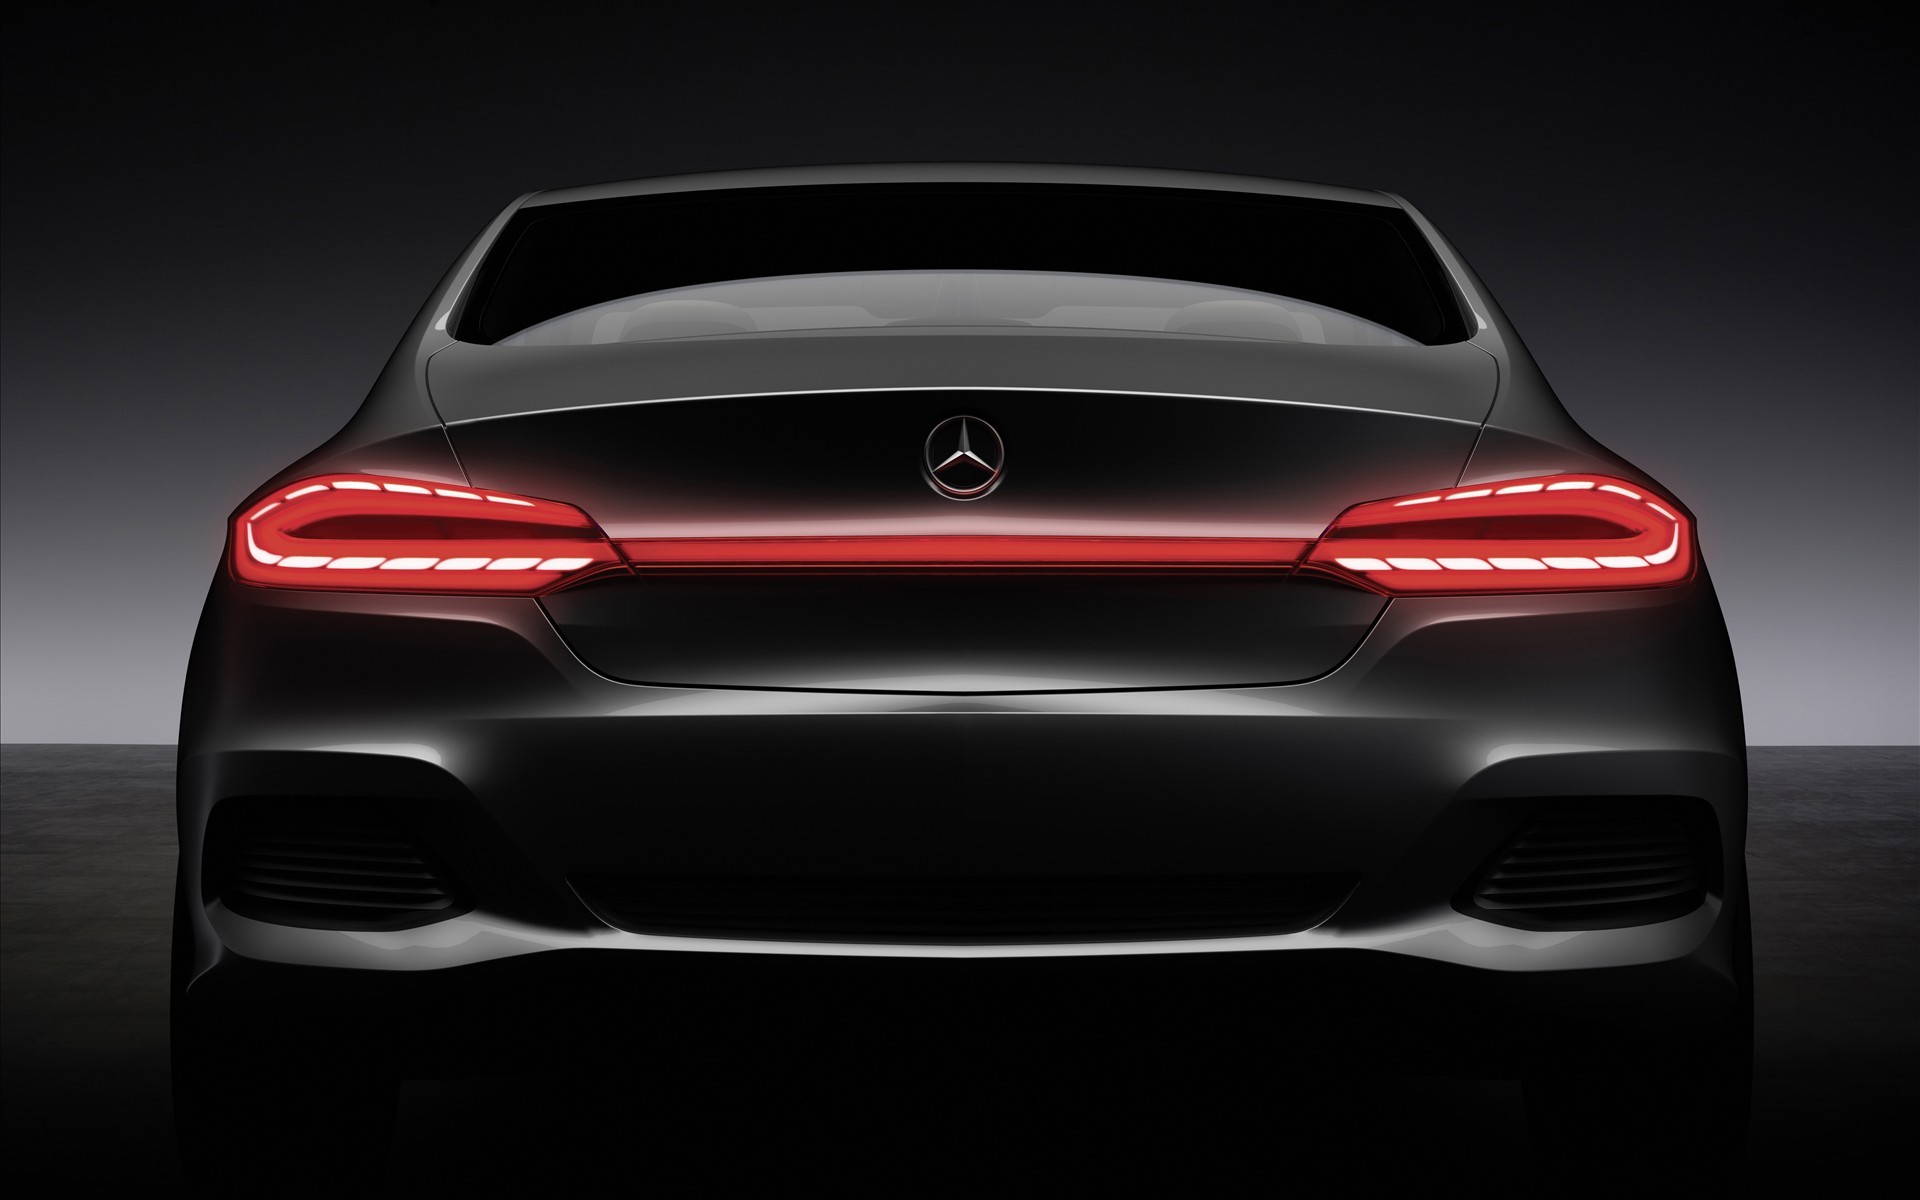 cars, supercars, concept cars, Mercedes-Benz - desktop wallpaper